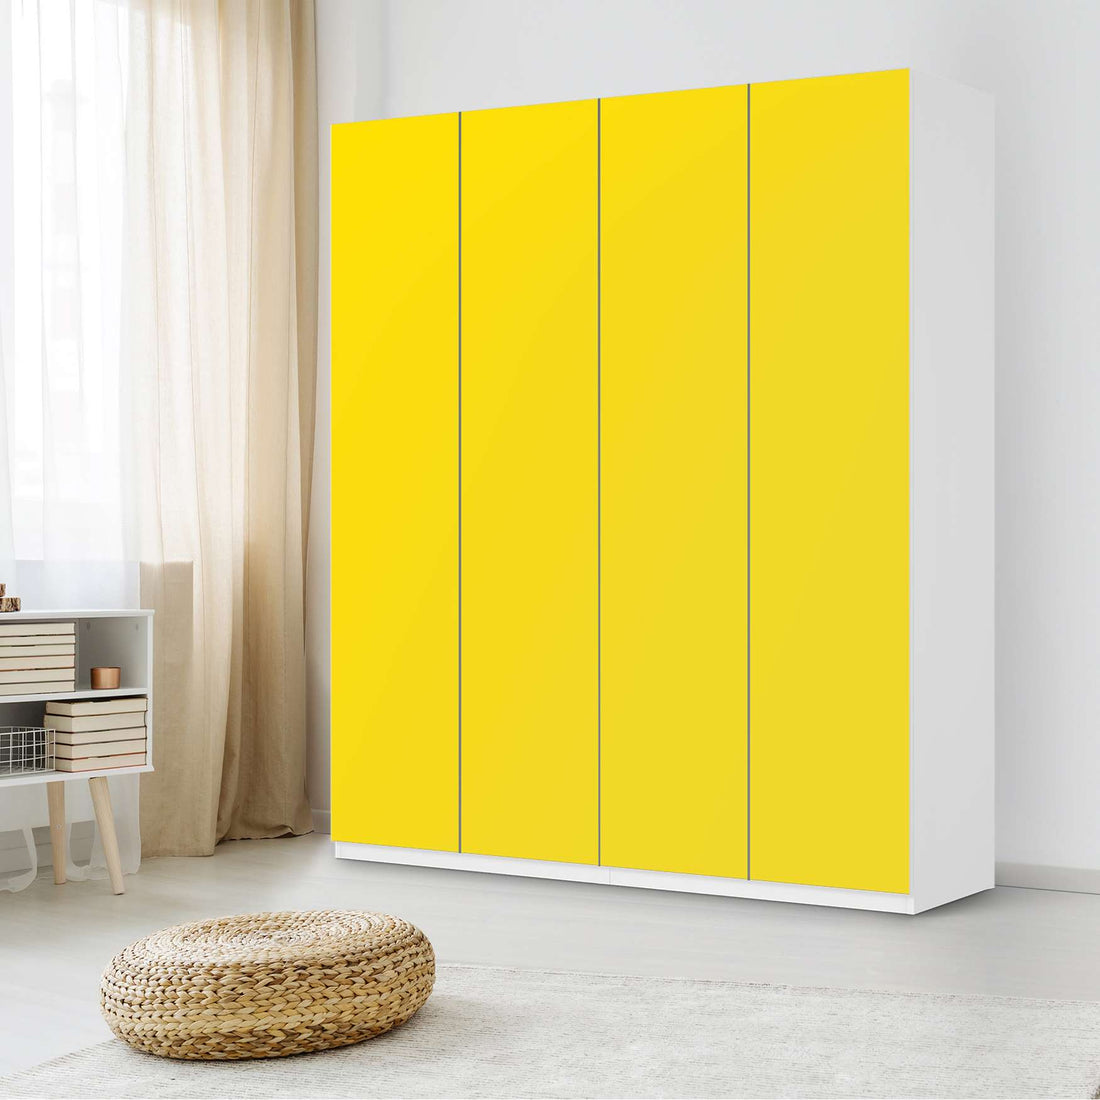 Möbelfolie Gelb Dark - IKEA Pax Schrank 236 cm Höhe - 4 Türen - Schlafzimmer